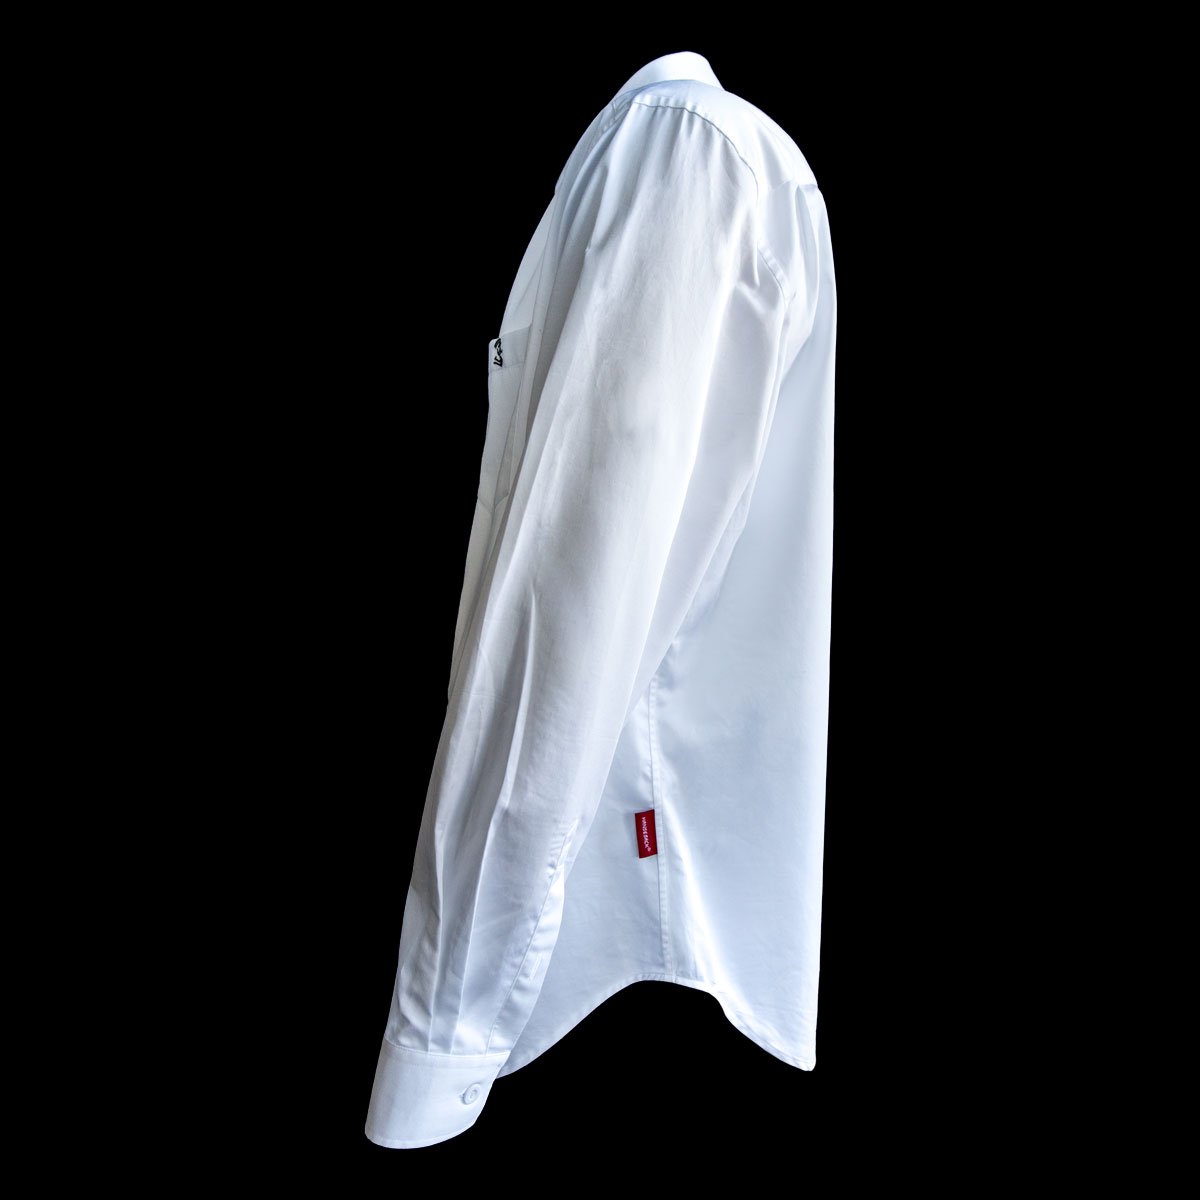 Hansesack Produktbild weißes Business-Hemd mit Brusttasche seidig glänzend von der Seite